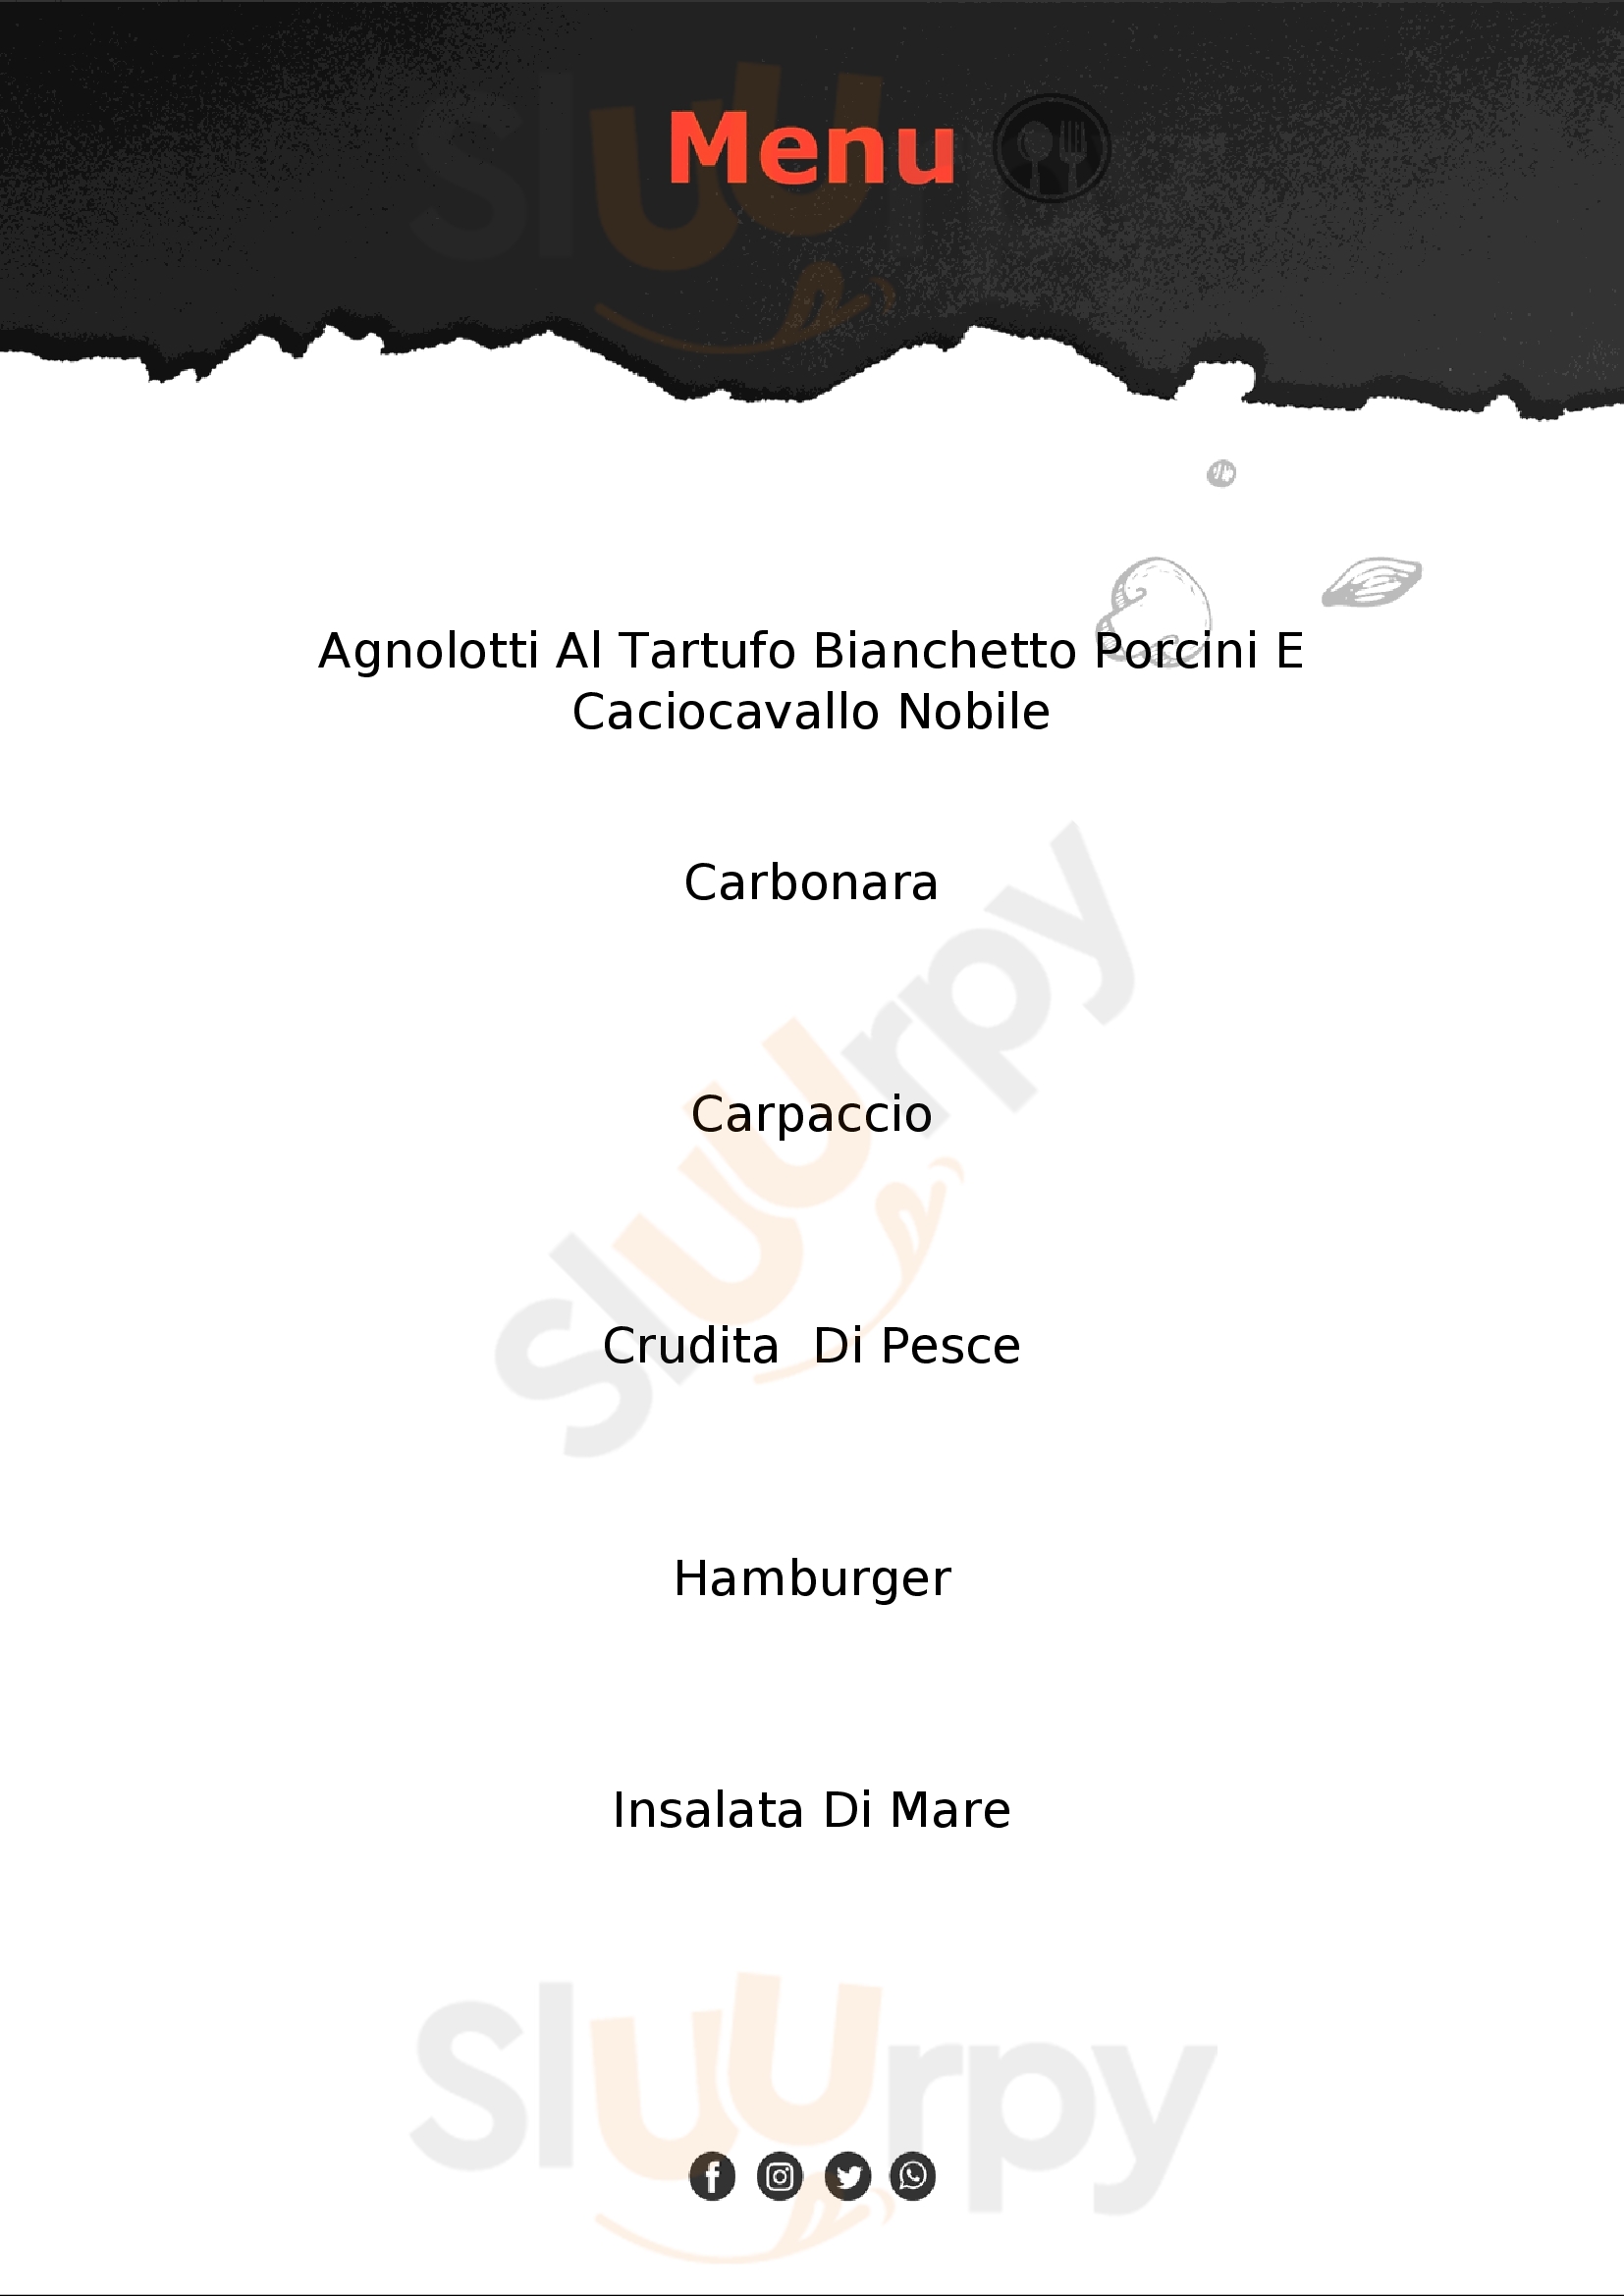 Capoccia's Ristorante Lecce menù 1 pagina